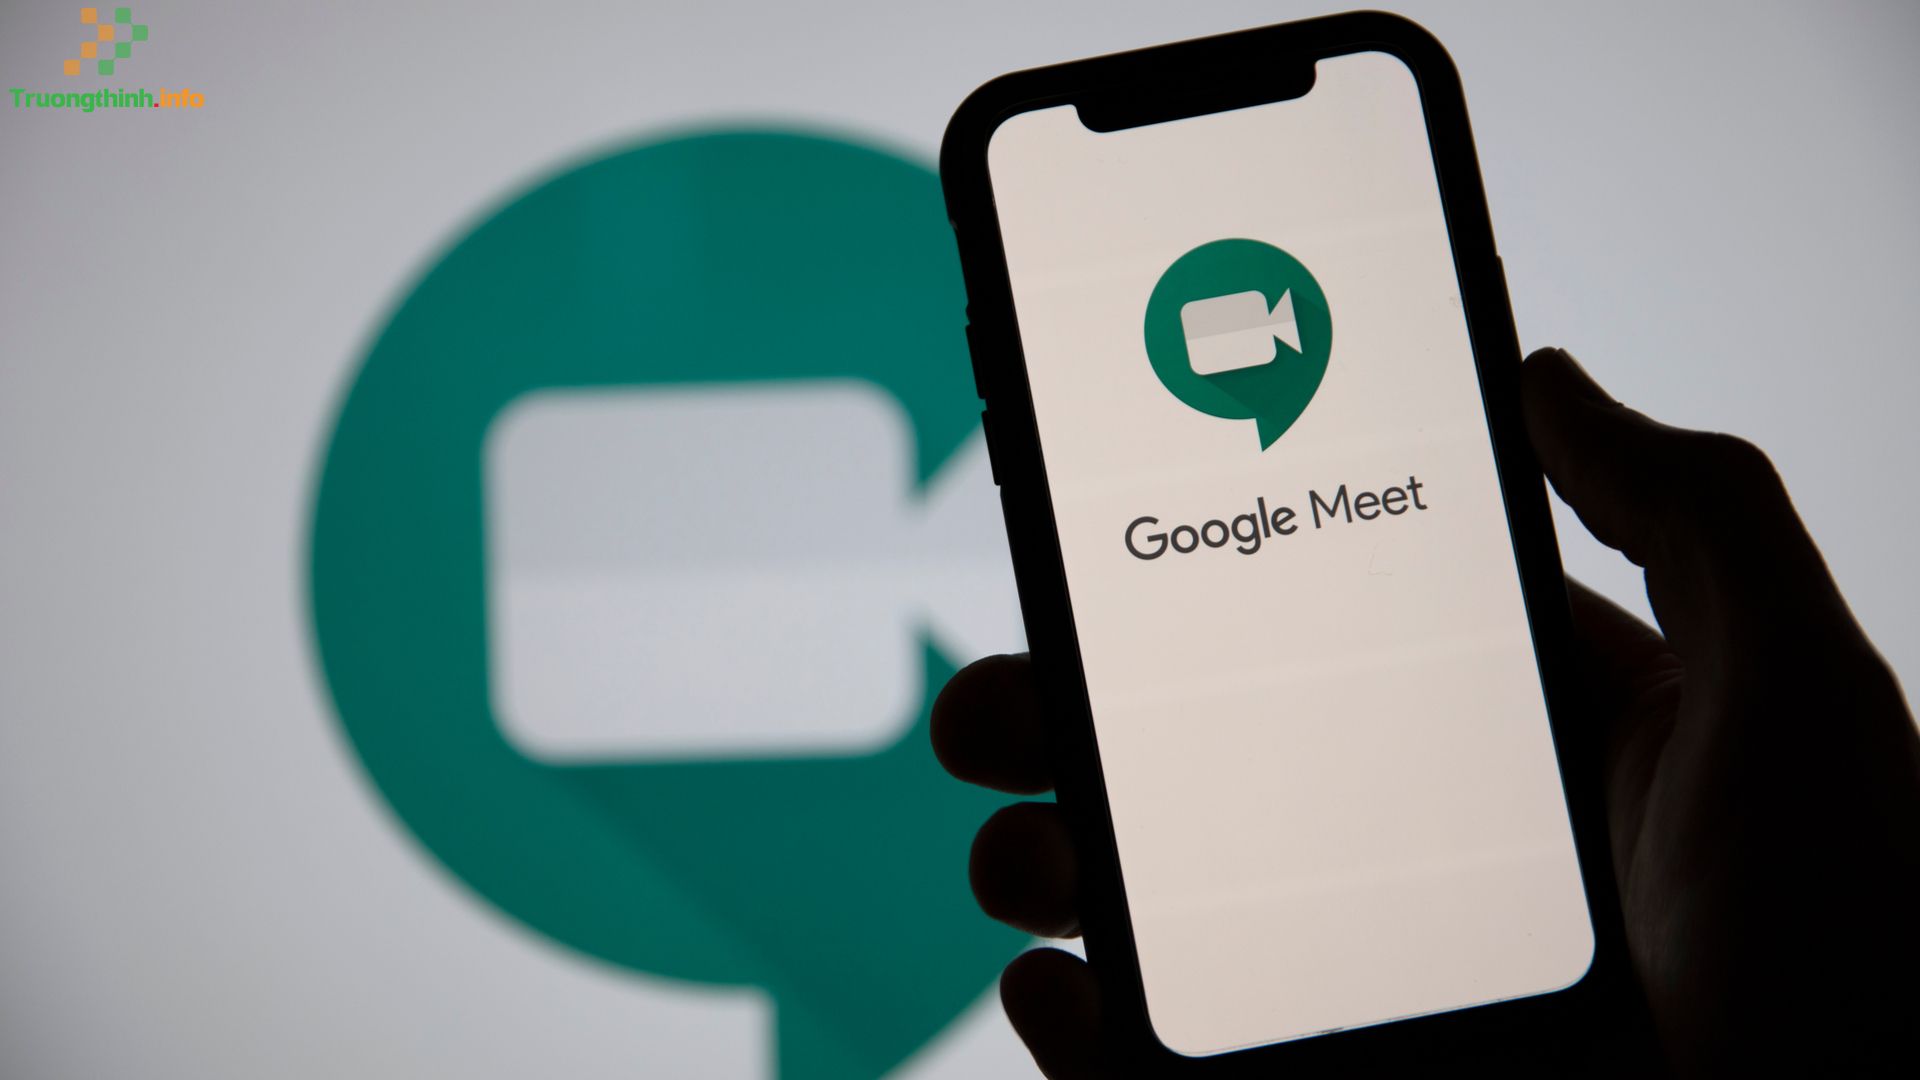                       Hướng dẫn cách sử dụng Google Meet trên điện thoại, máy tính từ A đến Z